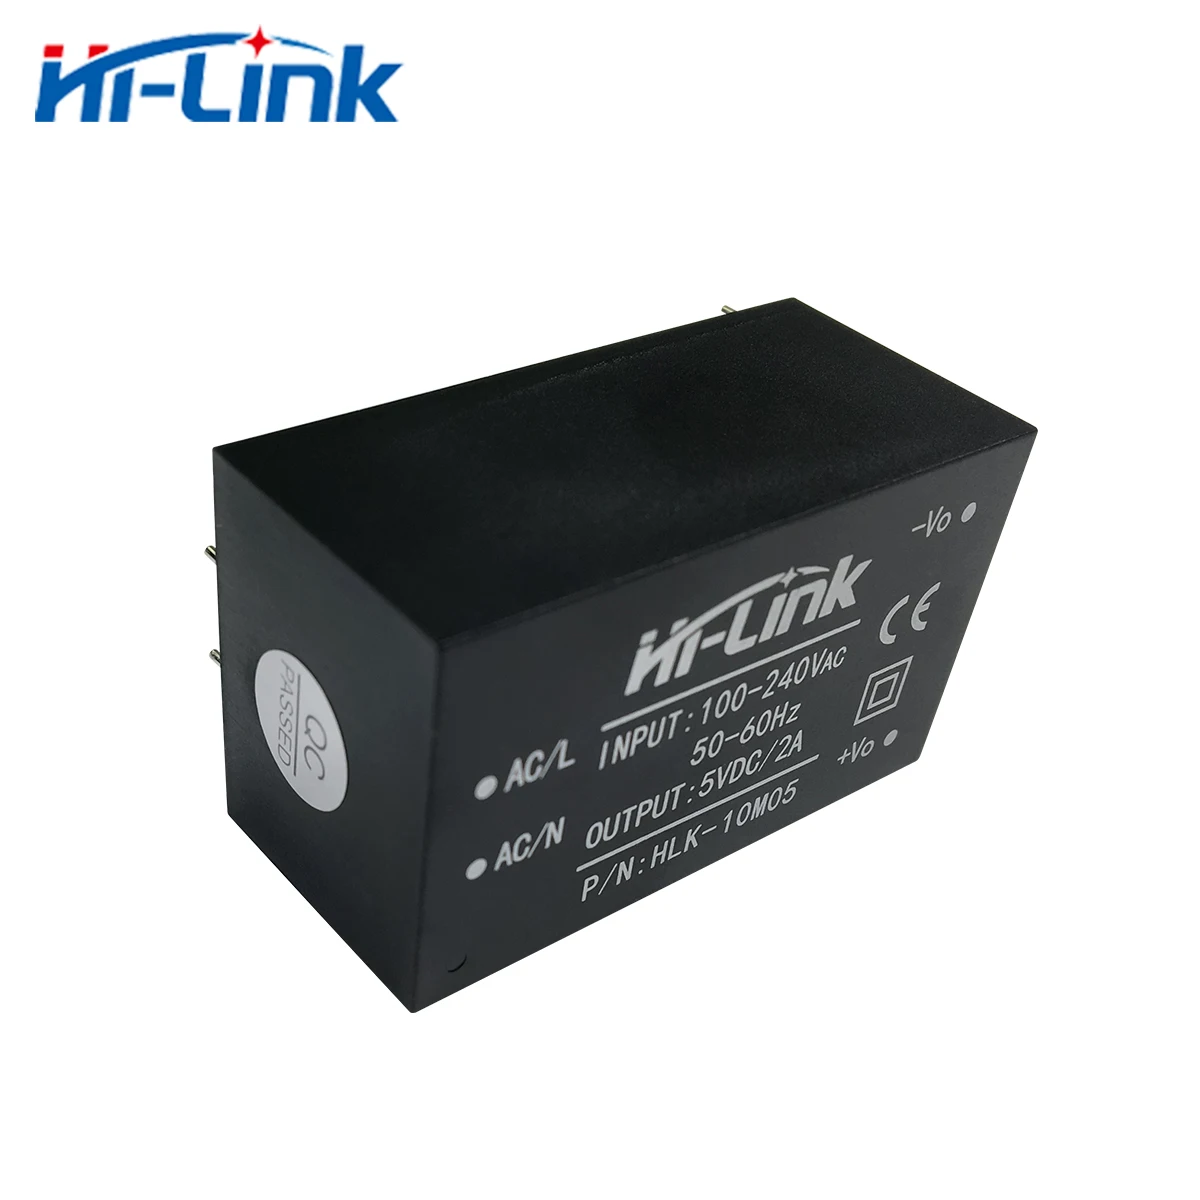 HiLink Original 10W 5V 2A  AC DC Power Supply Module HLK-10M05 110V 220V